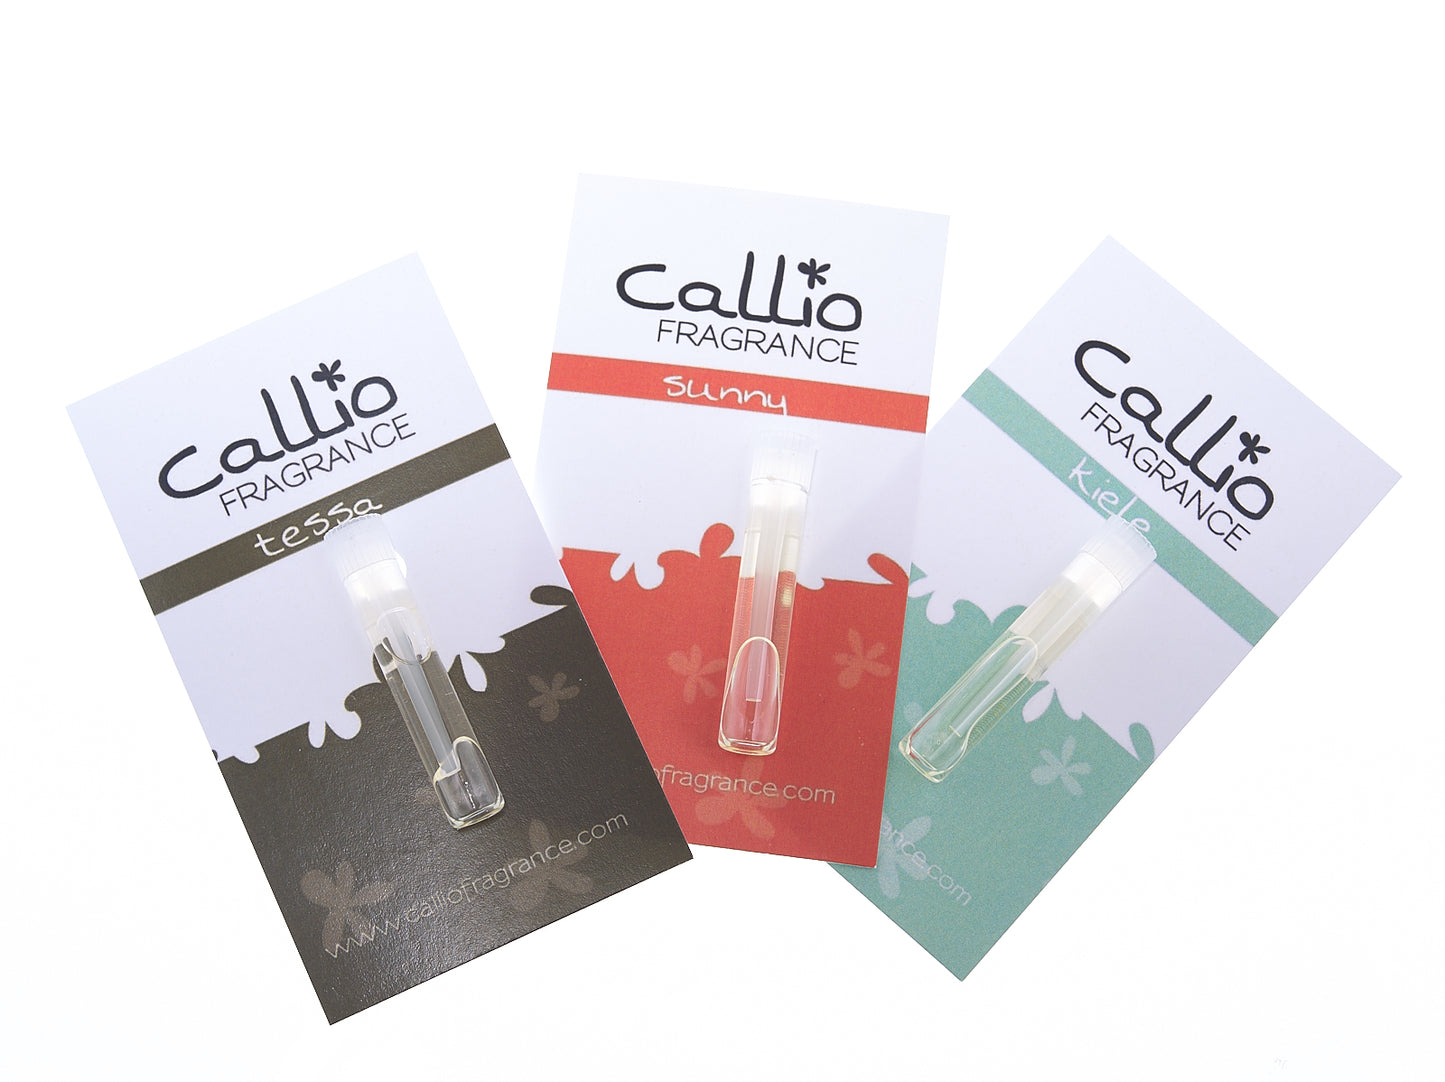 Sample vial cards from Callio Fragrance featuring Tessa, Sunny, and Kiele.